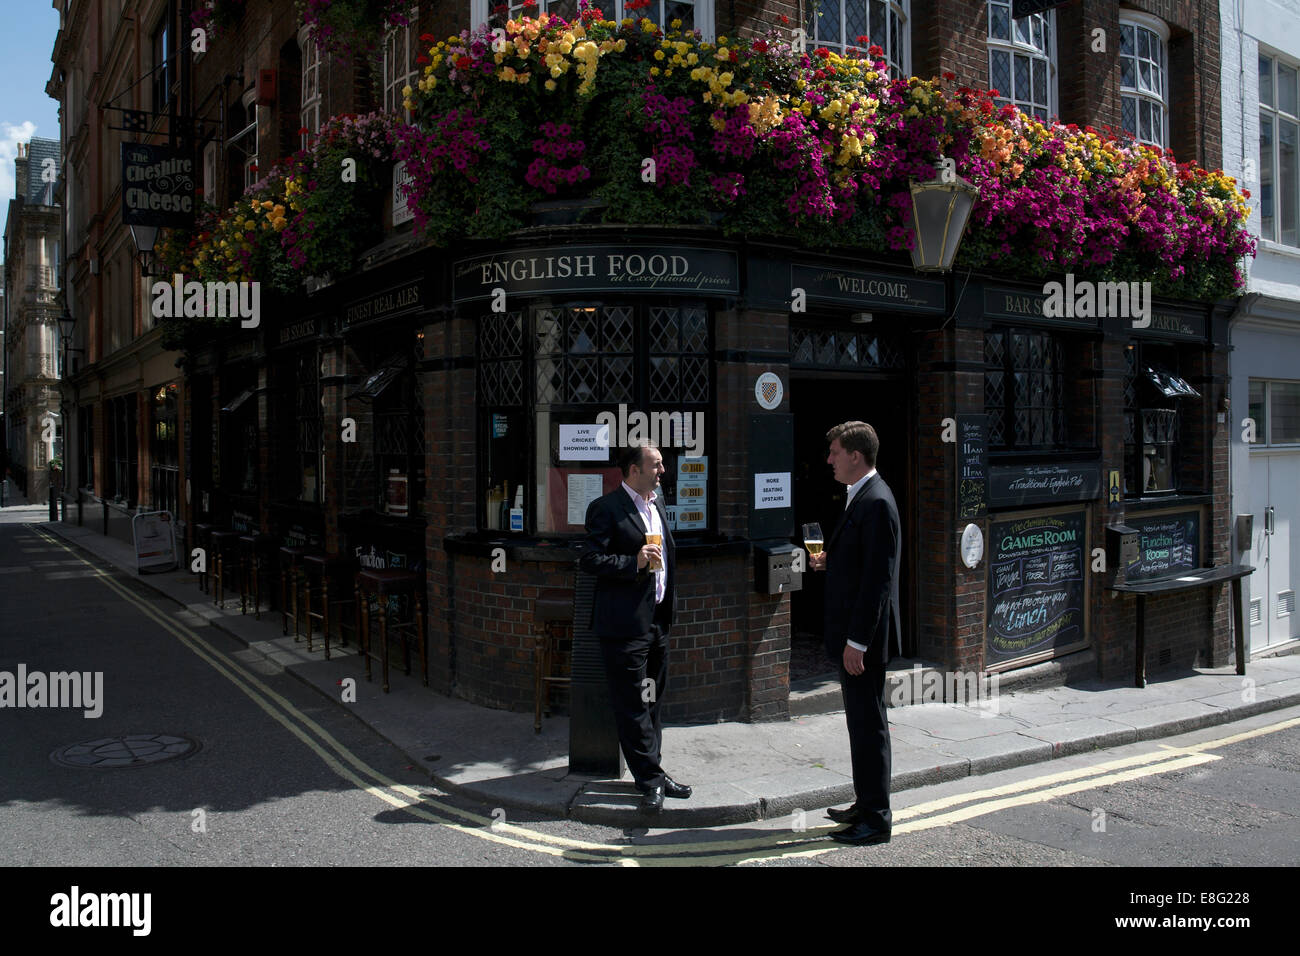 Dos hombres que ocupan las bebidas hablando fuera de un pub public house día soleado, esquina de la calle Londres England Reino Unido cartel que decía comida inglesa Foto de stock